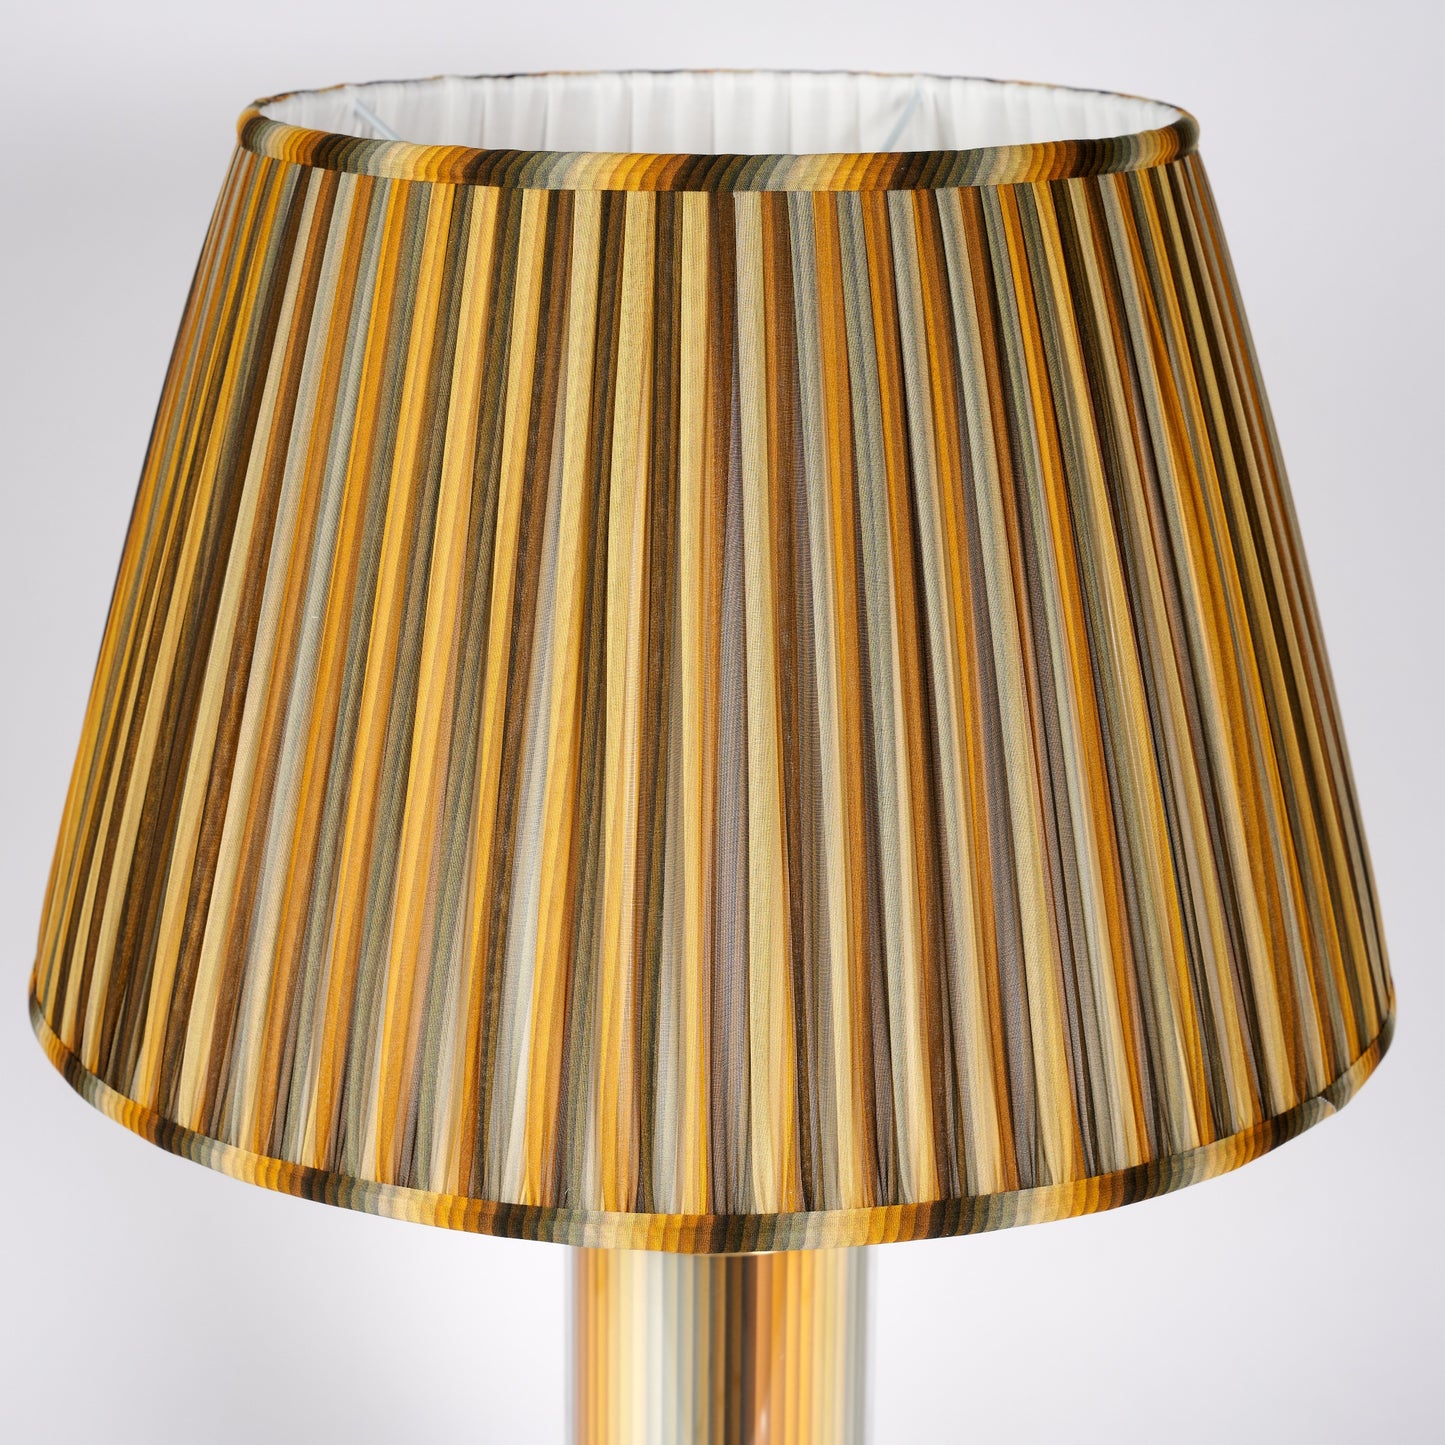 Undulating Stripes - Yellow Glass & Brass Lamp